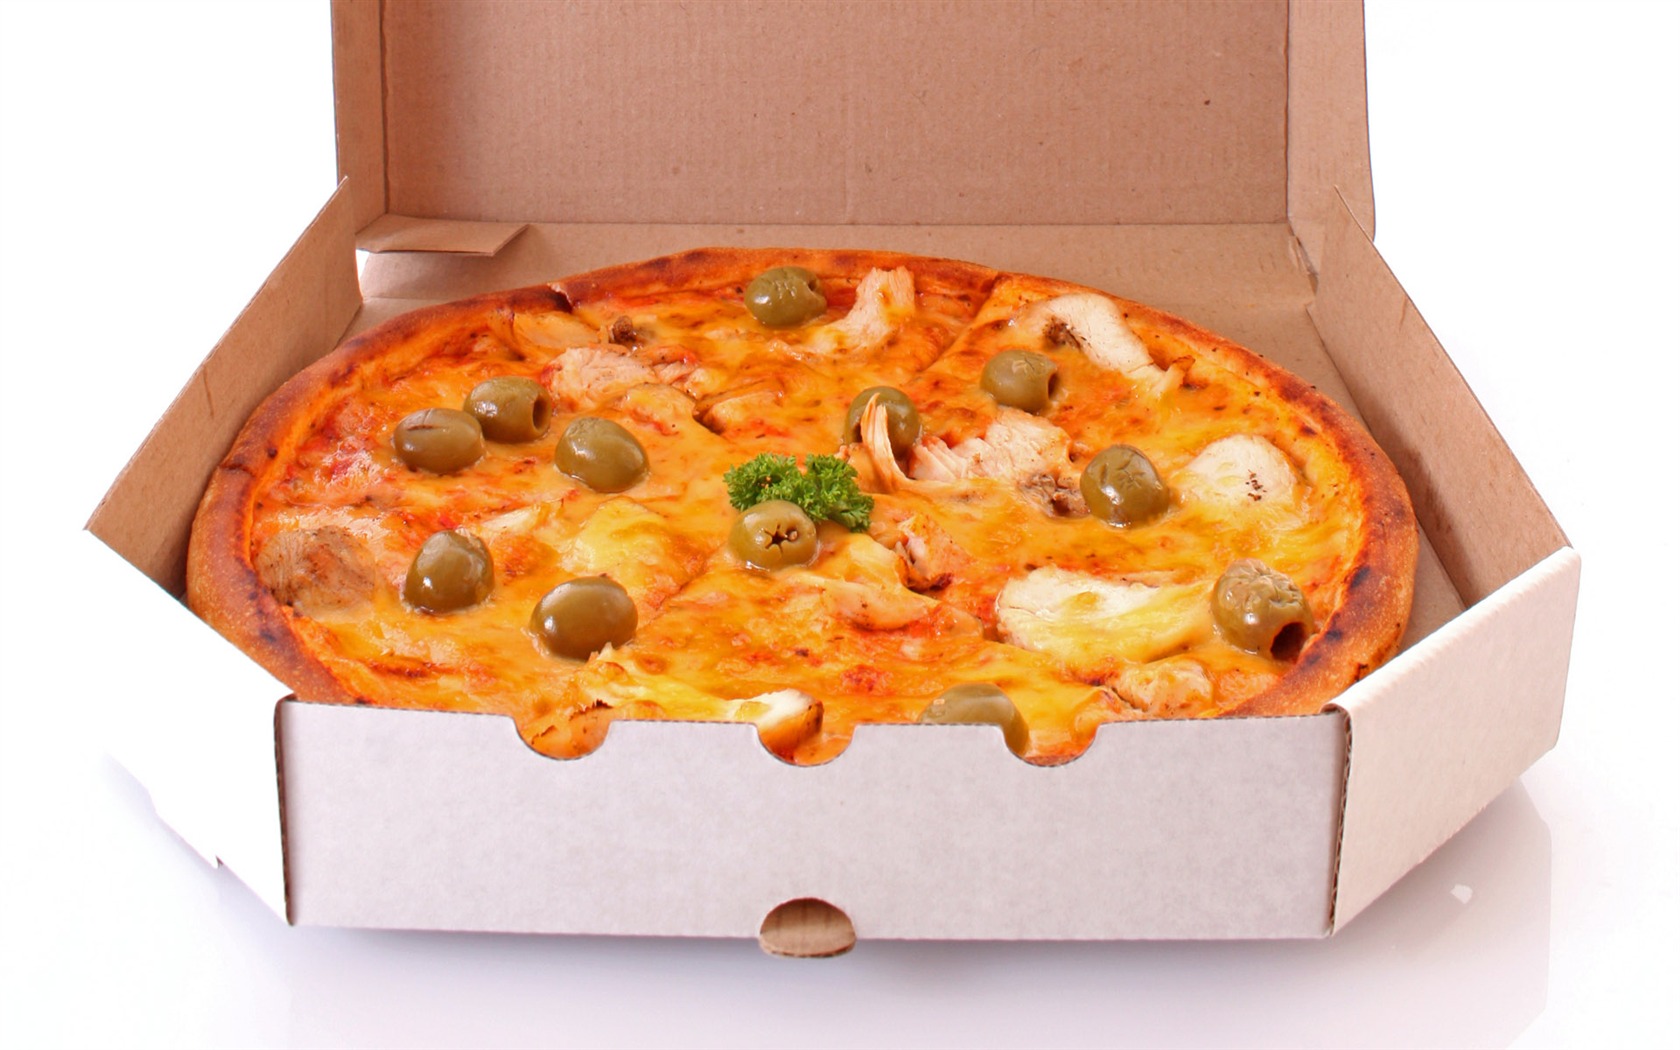 Fondos de pizzerías de Alimentos (3) #13 - 1680x1050